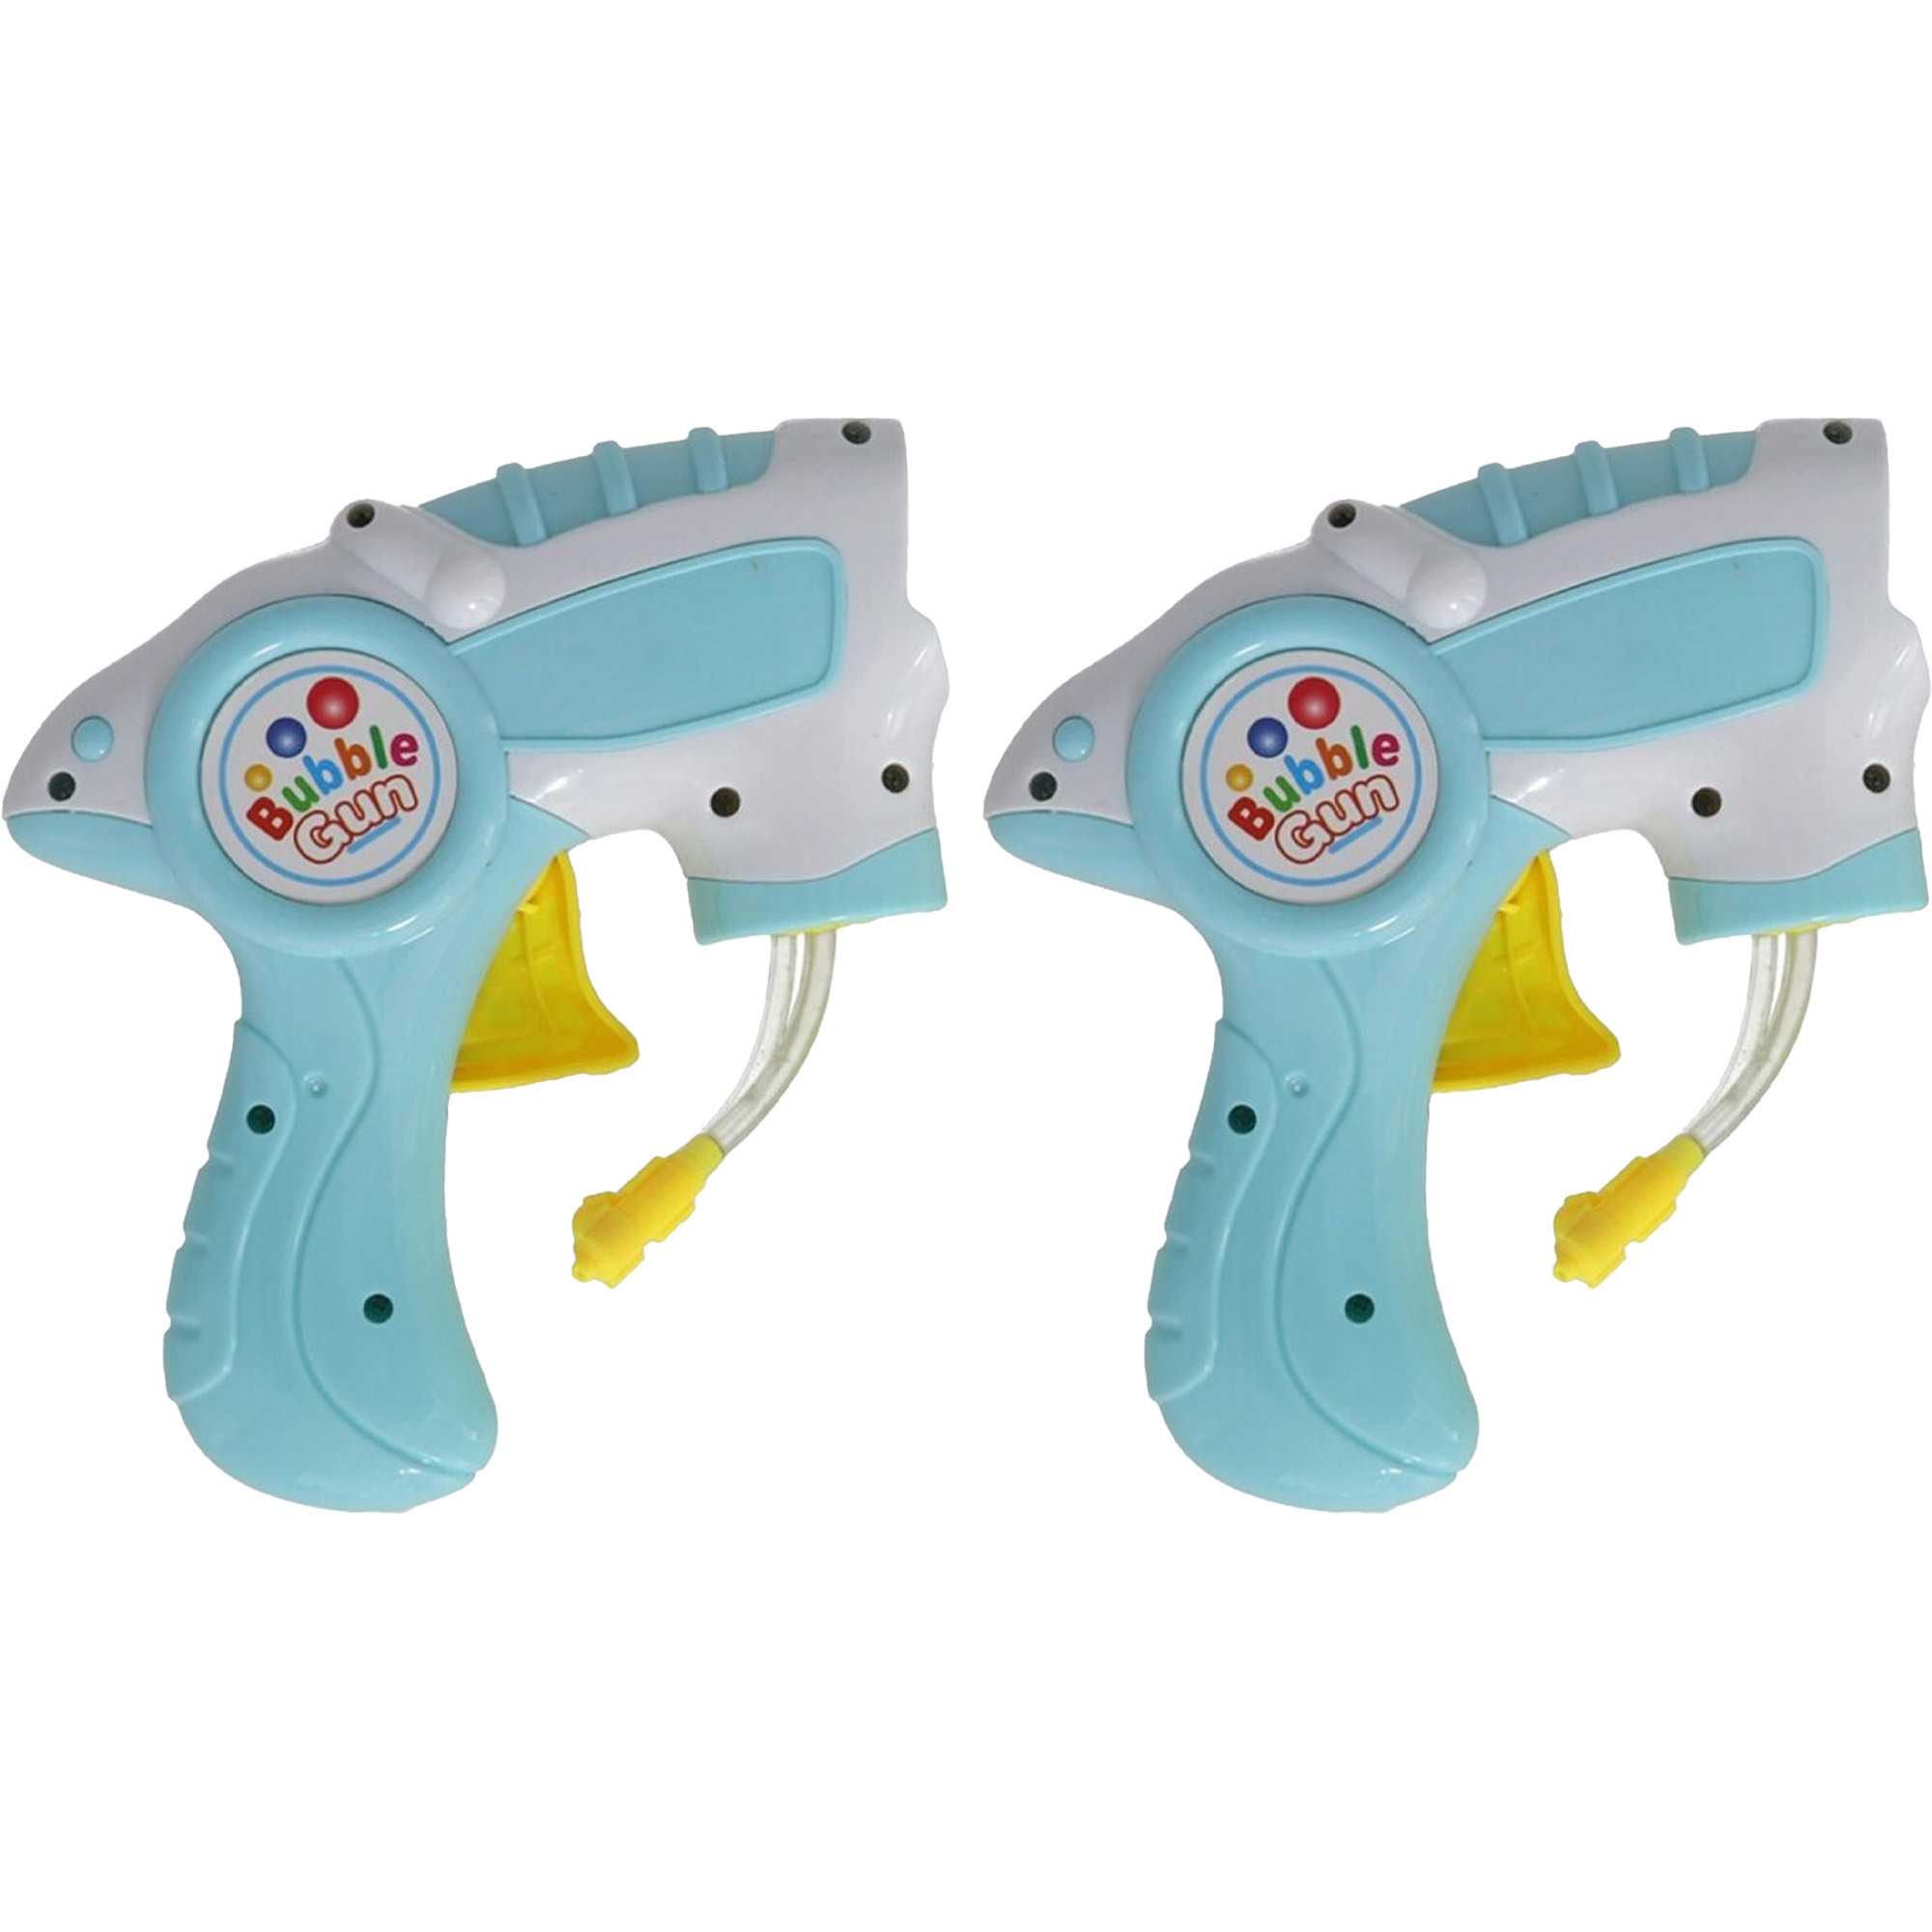 Bellenblaas speelgoed pistool 2x met vullingen lichtblauw 15 cm plastic bellen blazen